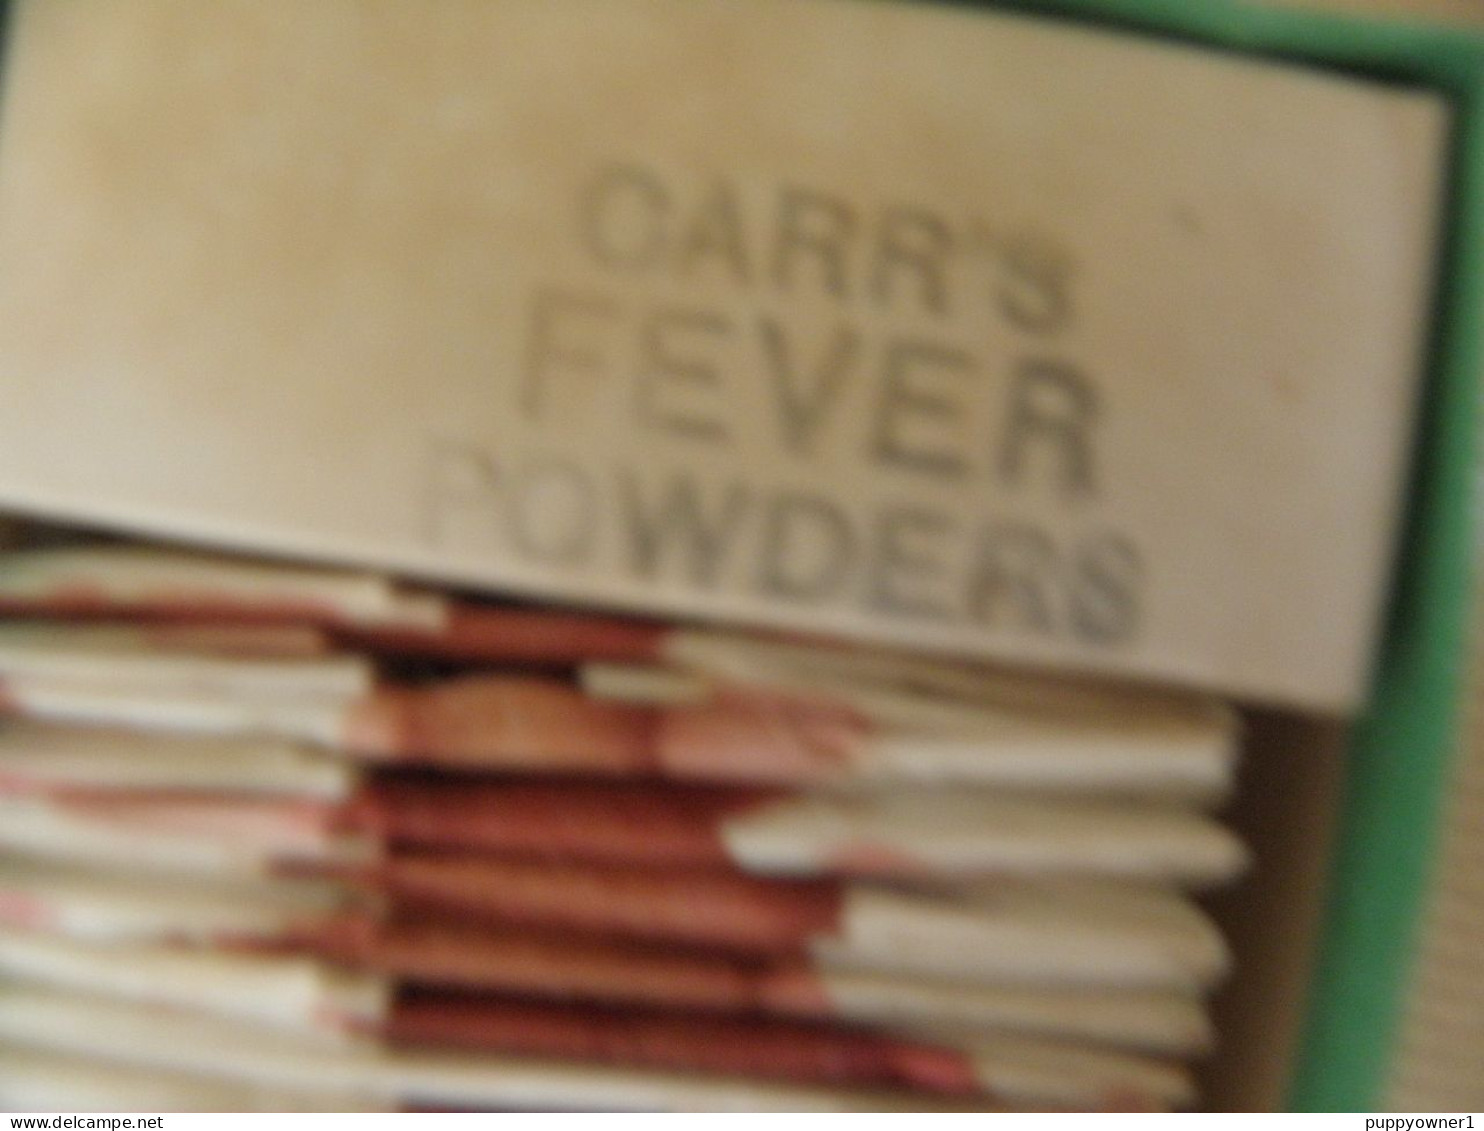 antique original faux médecine guérit tout , Carrs fever powders NE PAS UTILISER